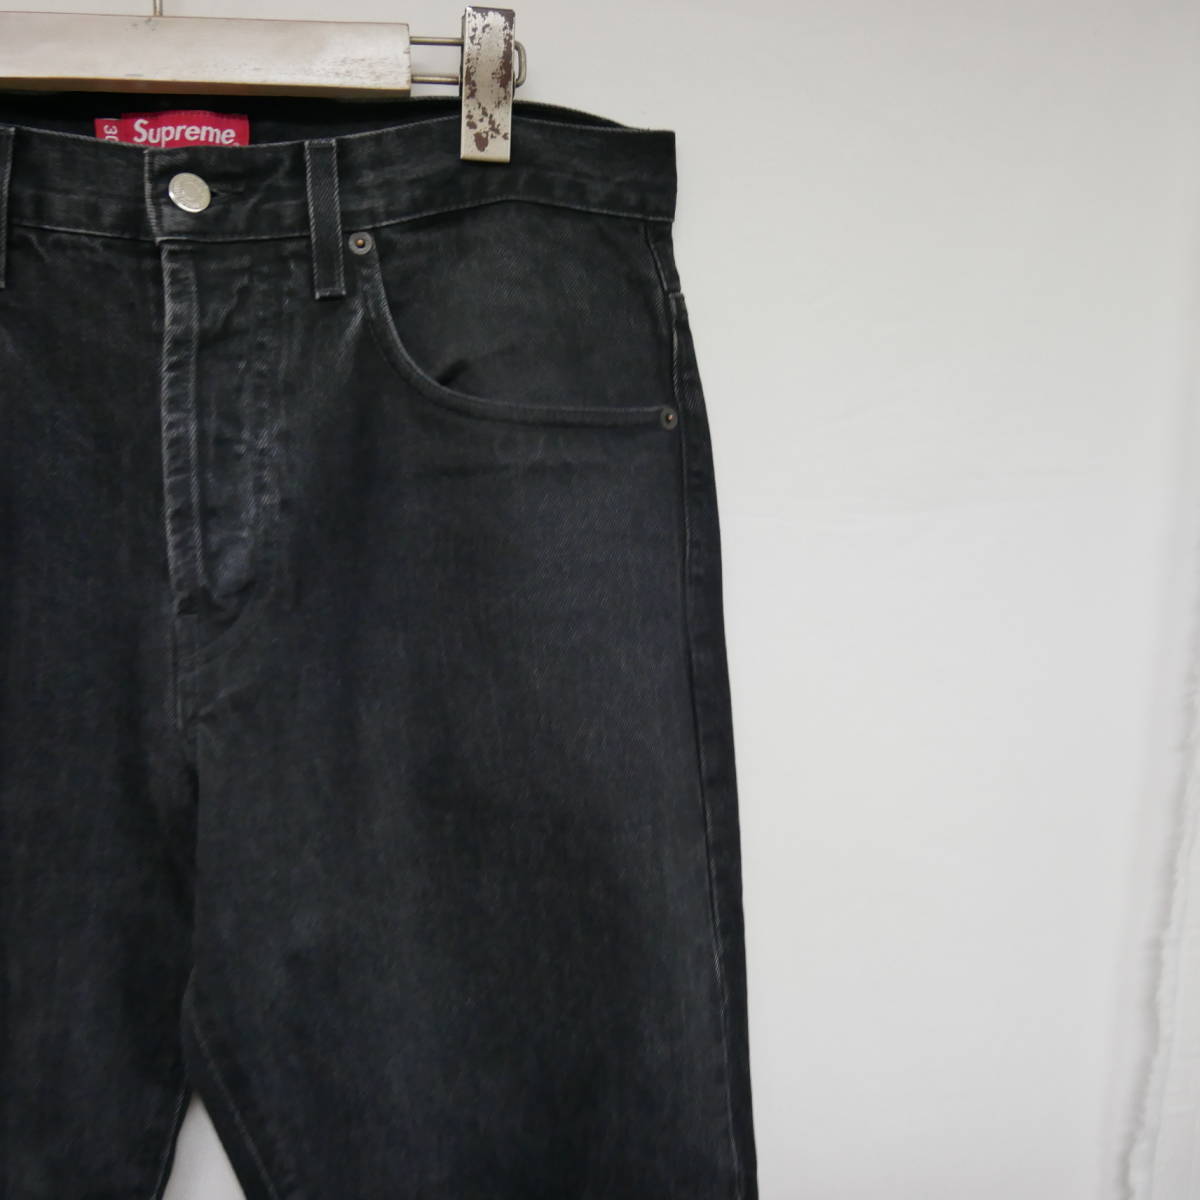 【1円】良好 国内正規 Supreme アメリカ製 USA製 Washed Regular Jean Jeans レギュラージーンズ 5ポケットデニム Black ブラック 濃黒 30_画像2